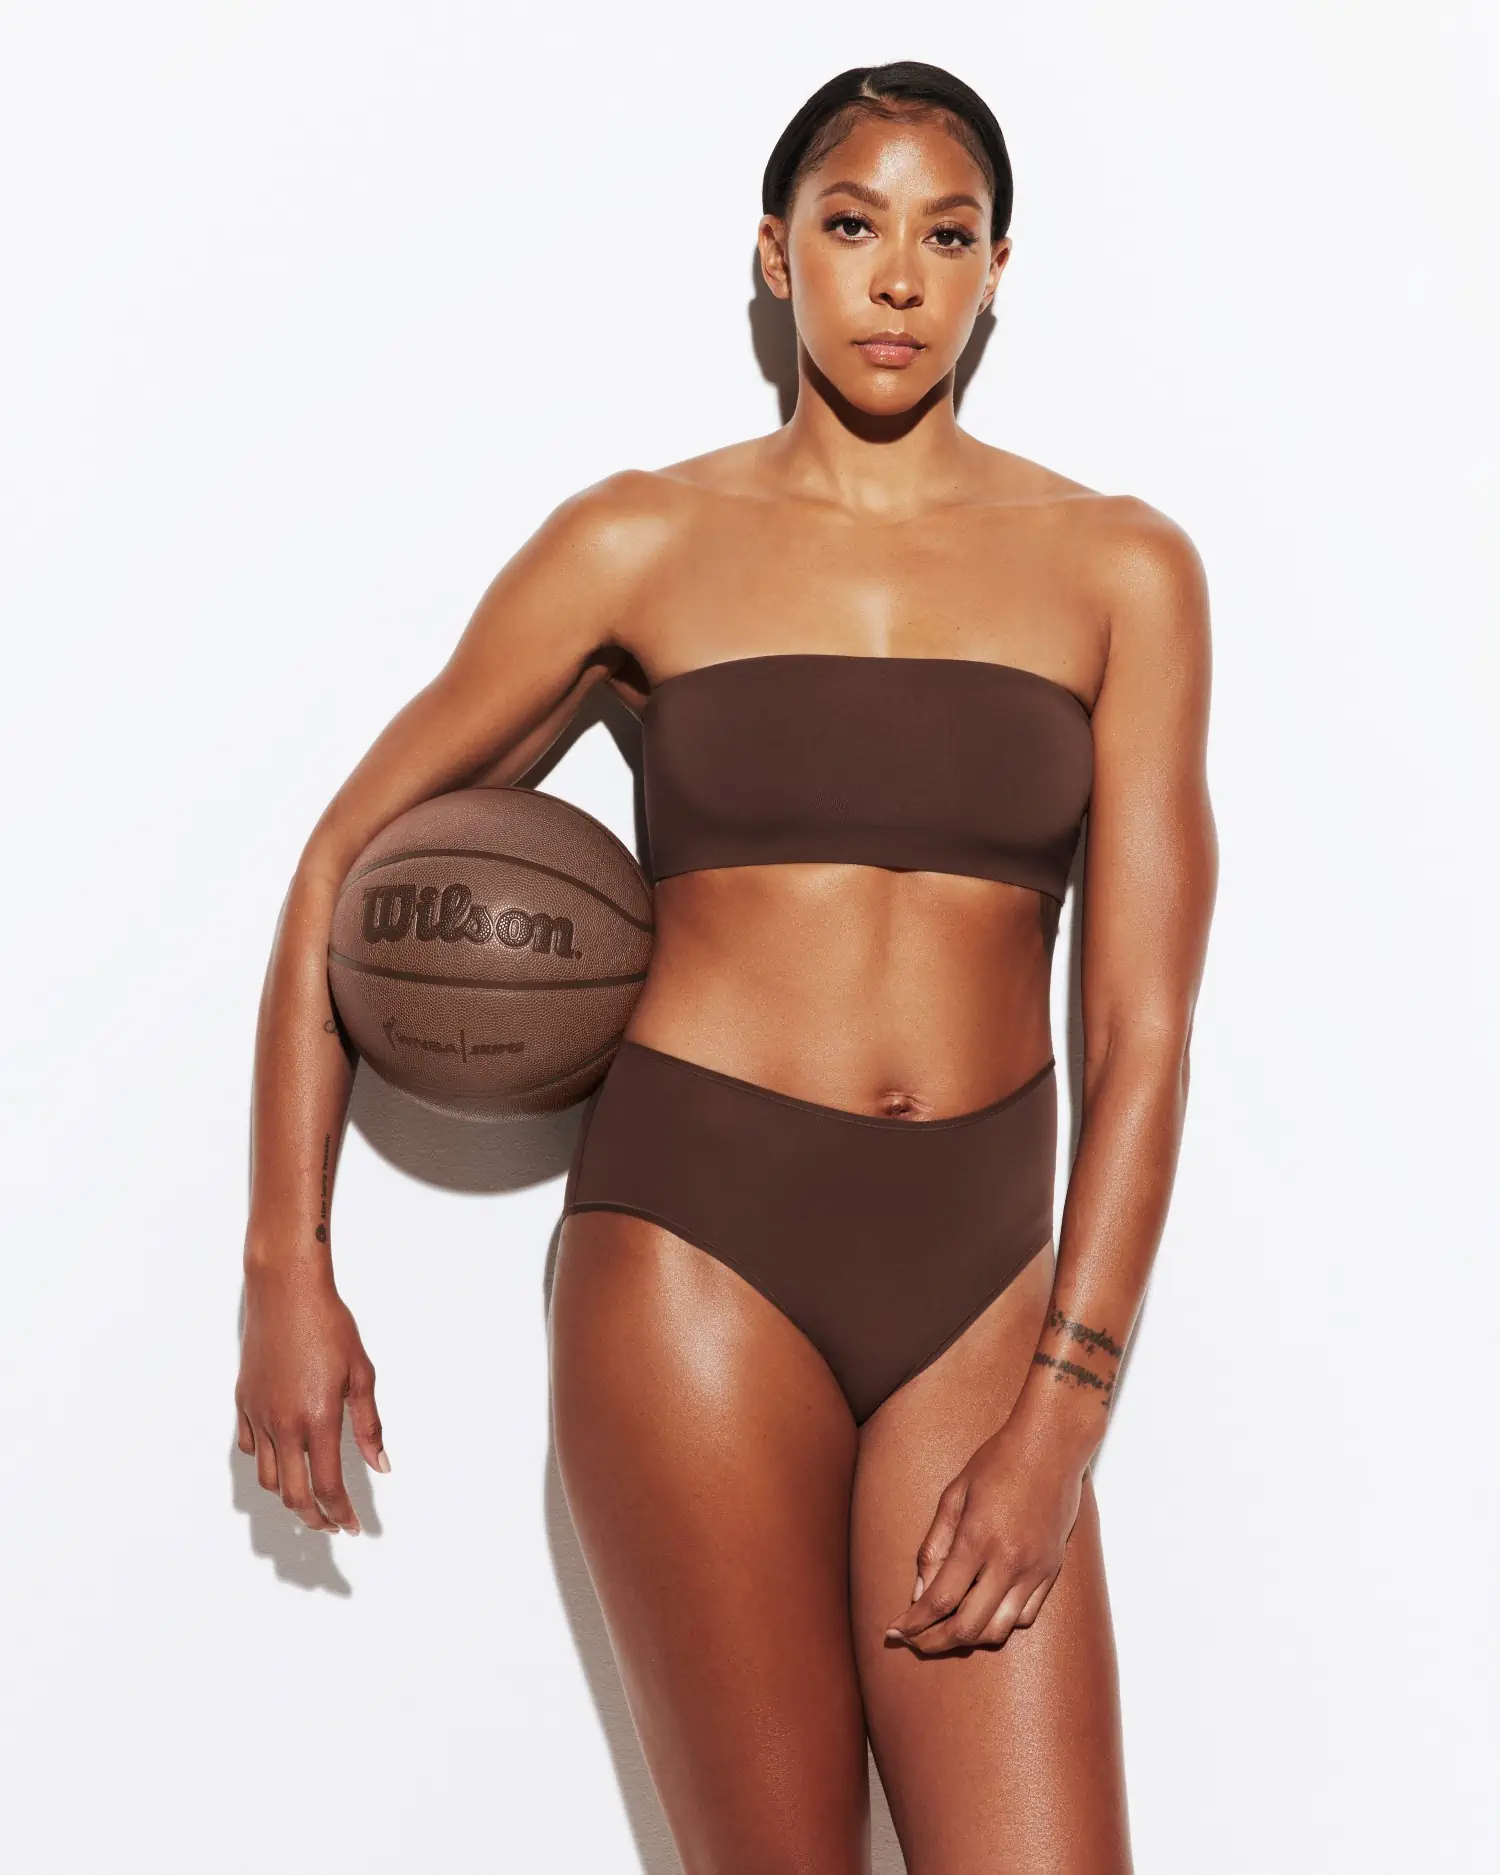 Skims x WNBA ''Fits Everybody'' campaign